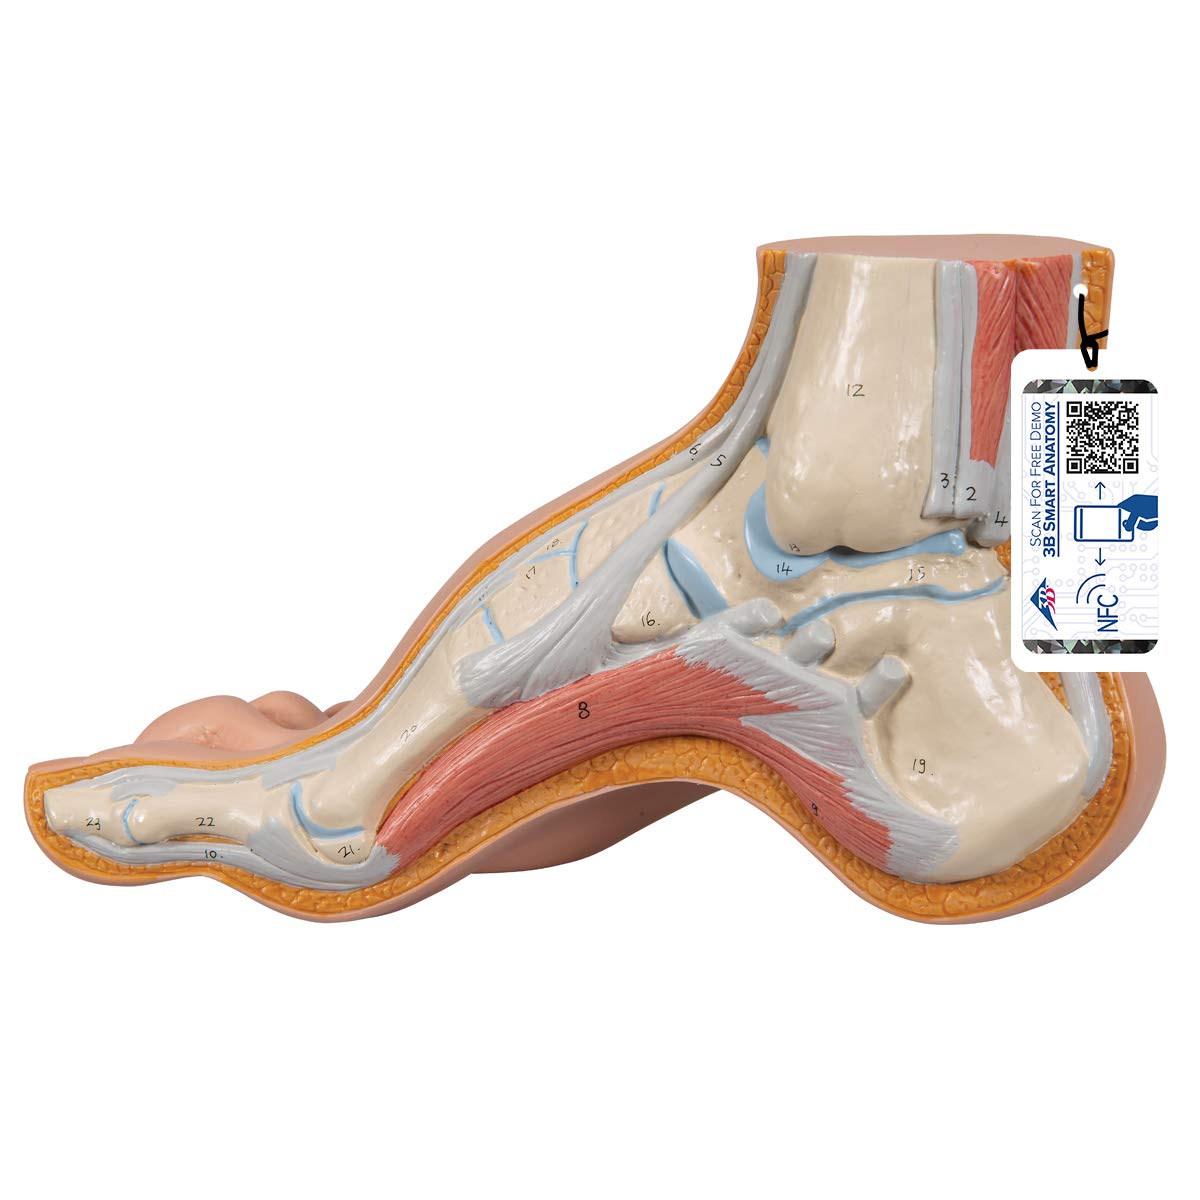 3B Scientific Menschliche Anatomie - Modell - Hohlfuß (Pes cavus) + kostenlose Anatomie App - 3B Smart Anatomy, M32